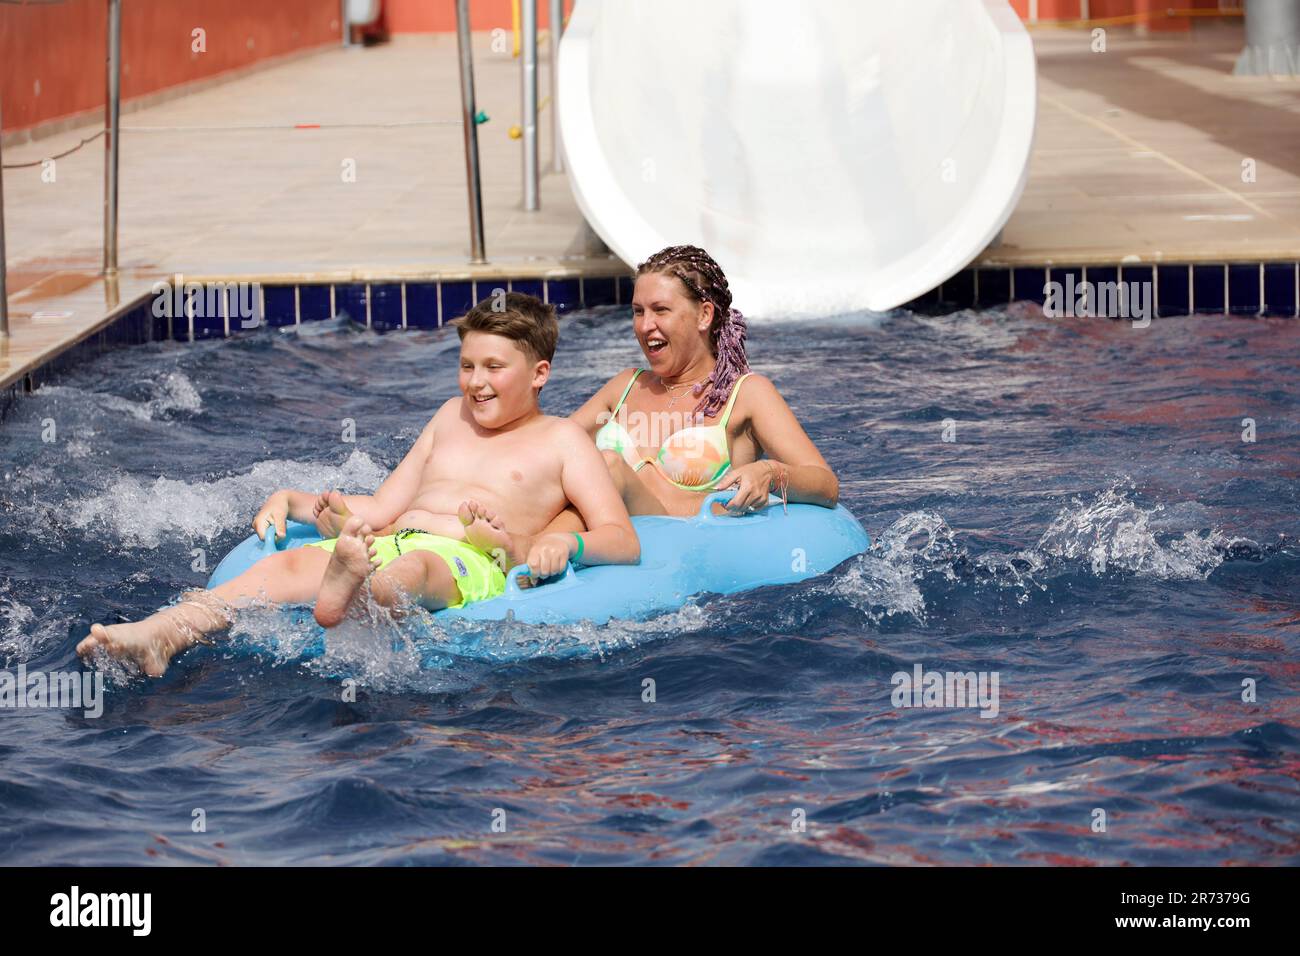 Glückliche Frau und Junge im aufblasbaren Kreis rollten auf der Wasserrutsche im Aqua Park herunter. Auf dem Wasserrohr fahren, Spaß haben Stockfoto